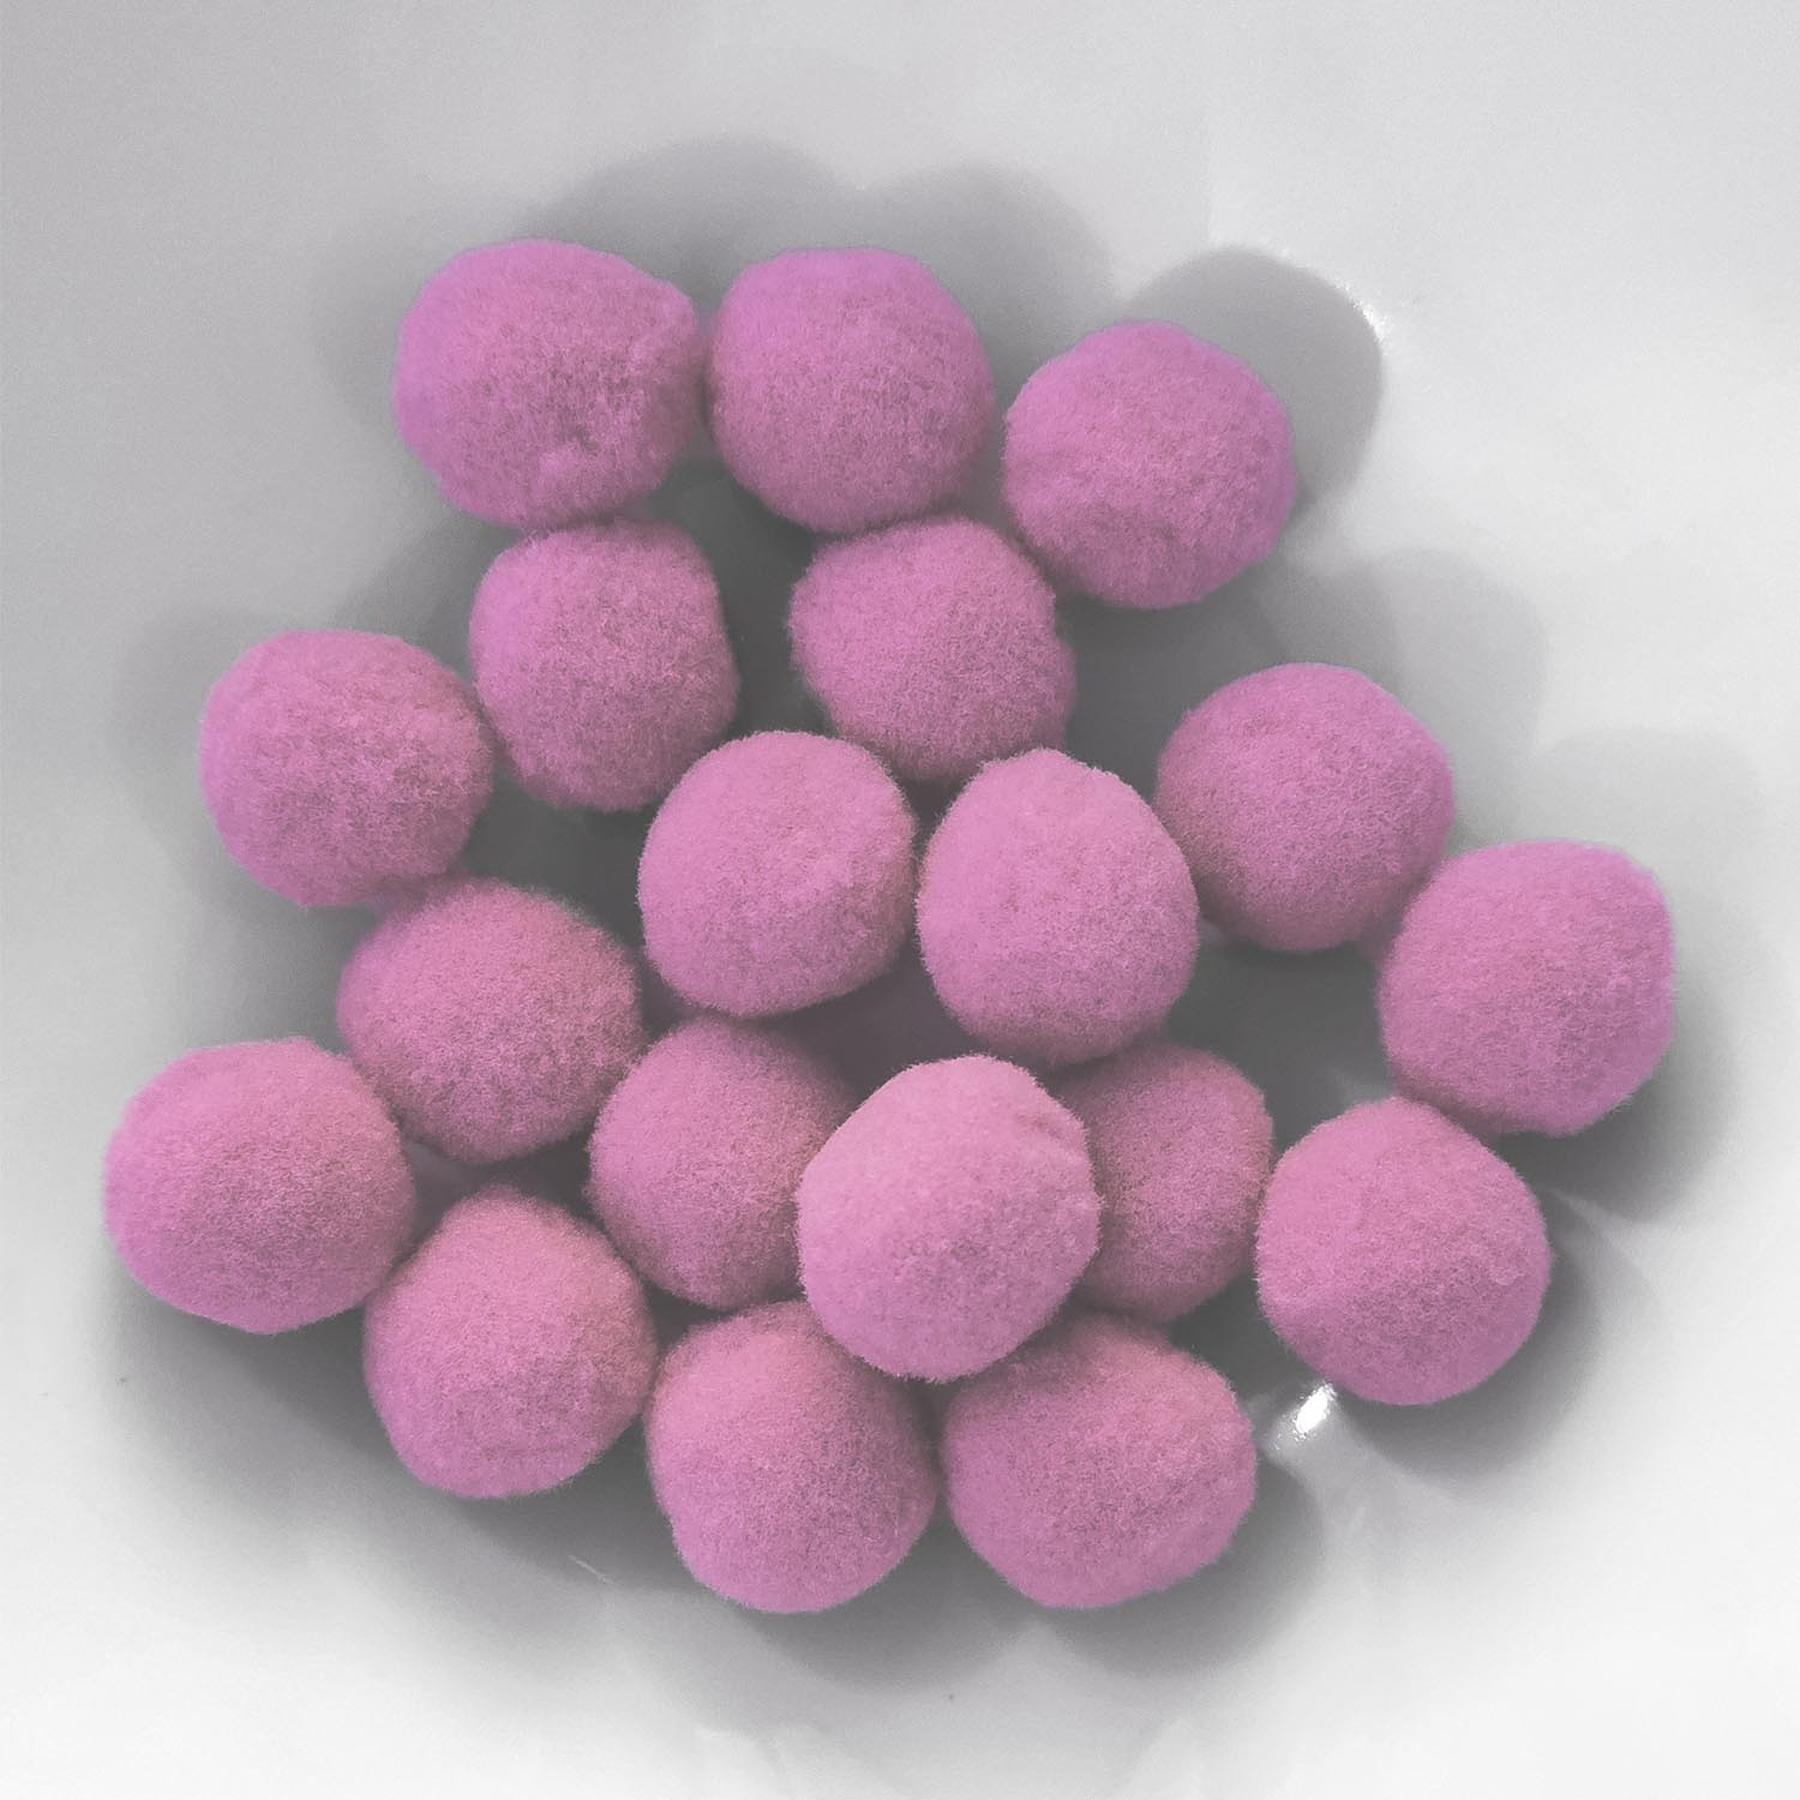 PomPon / Bälle aus Baumwolle - 25 mm / 20er Set - Rosa